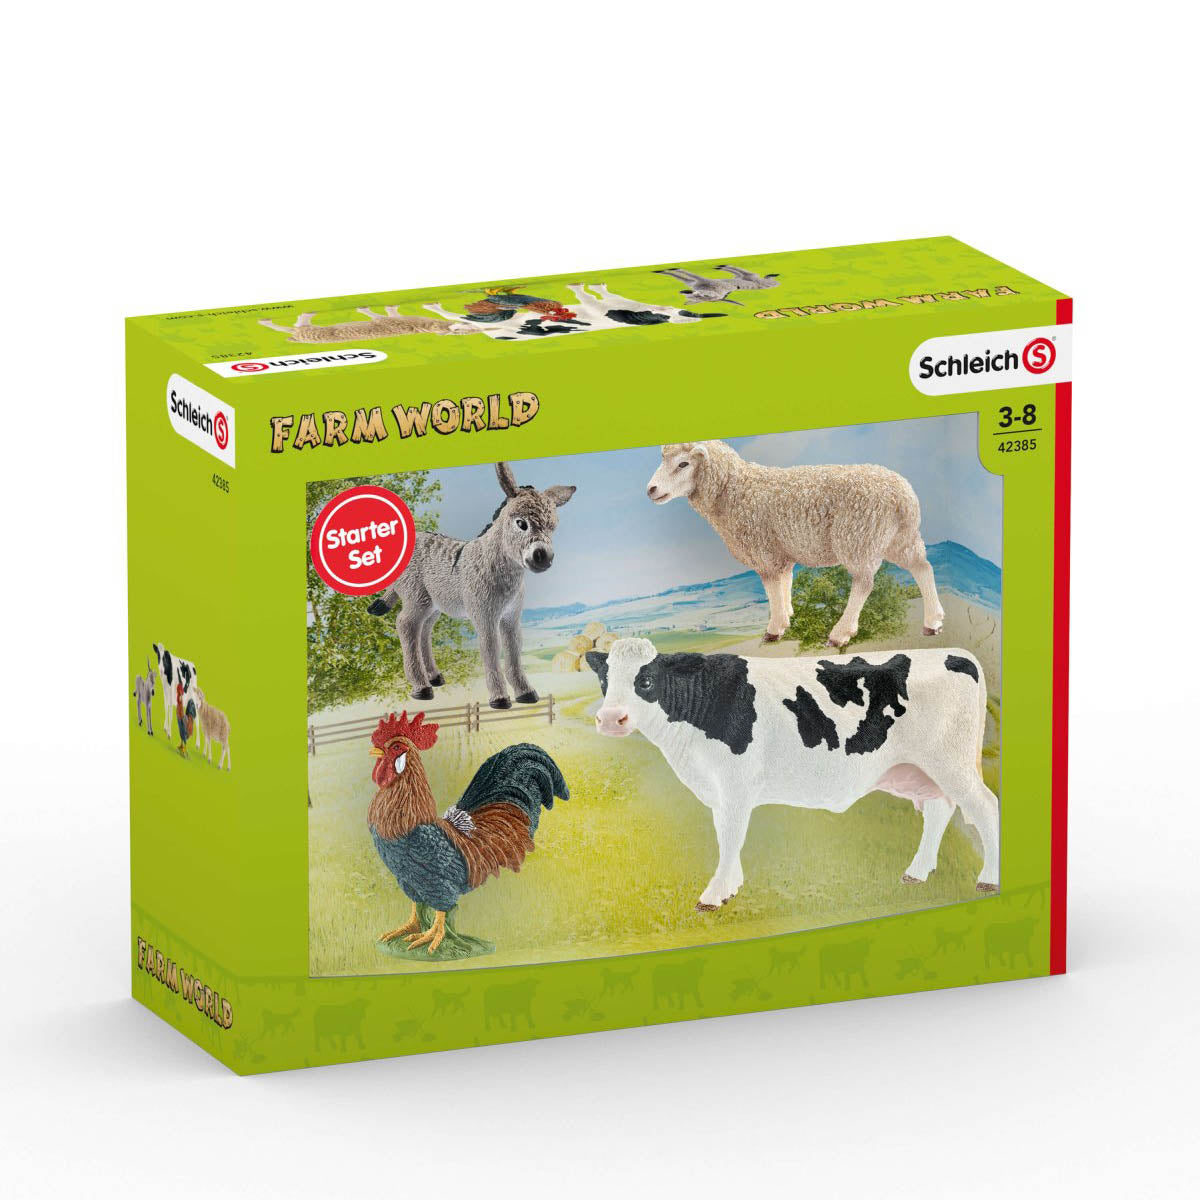 Schleich Farm World Starter Set 42385 Packaging